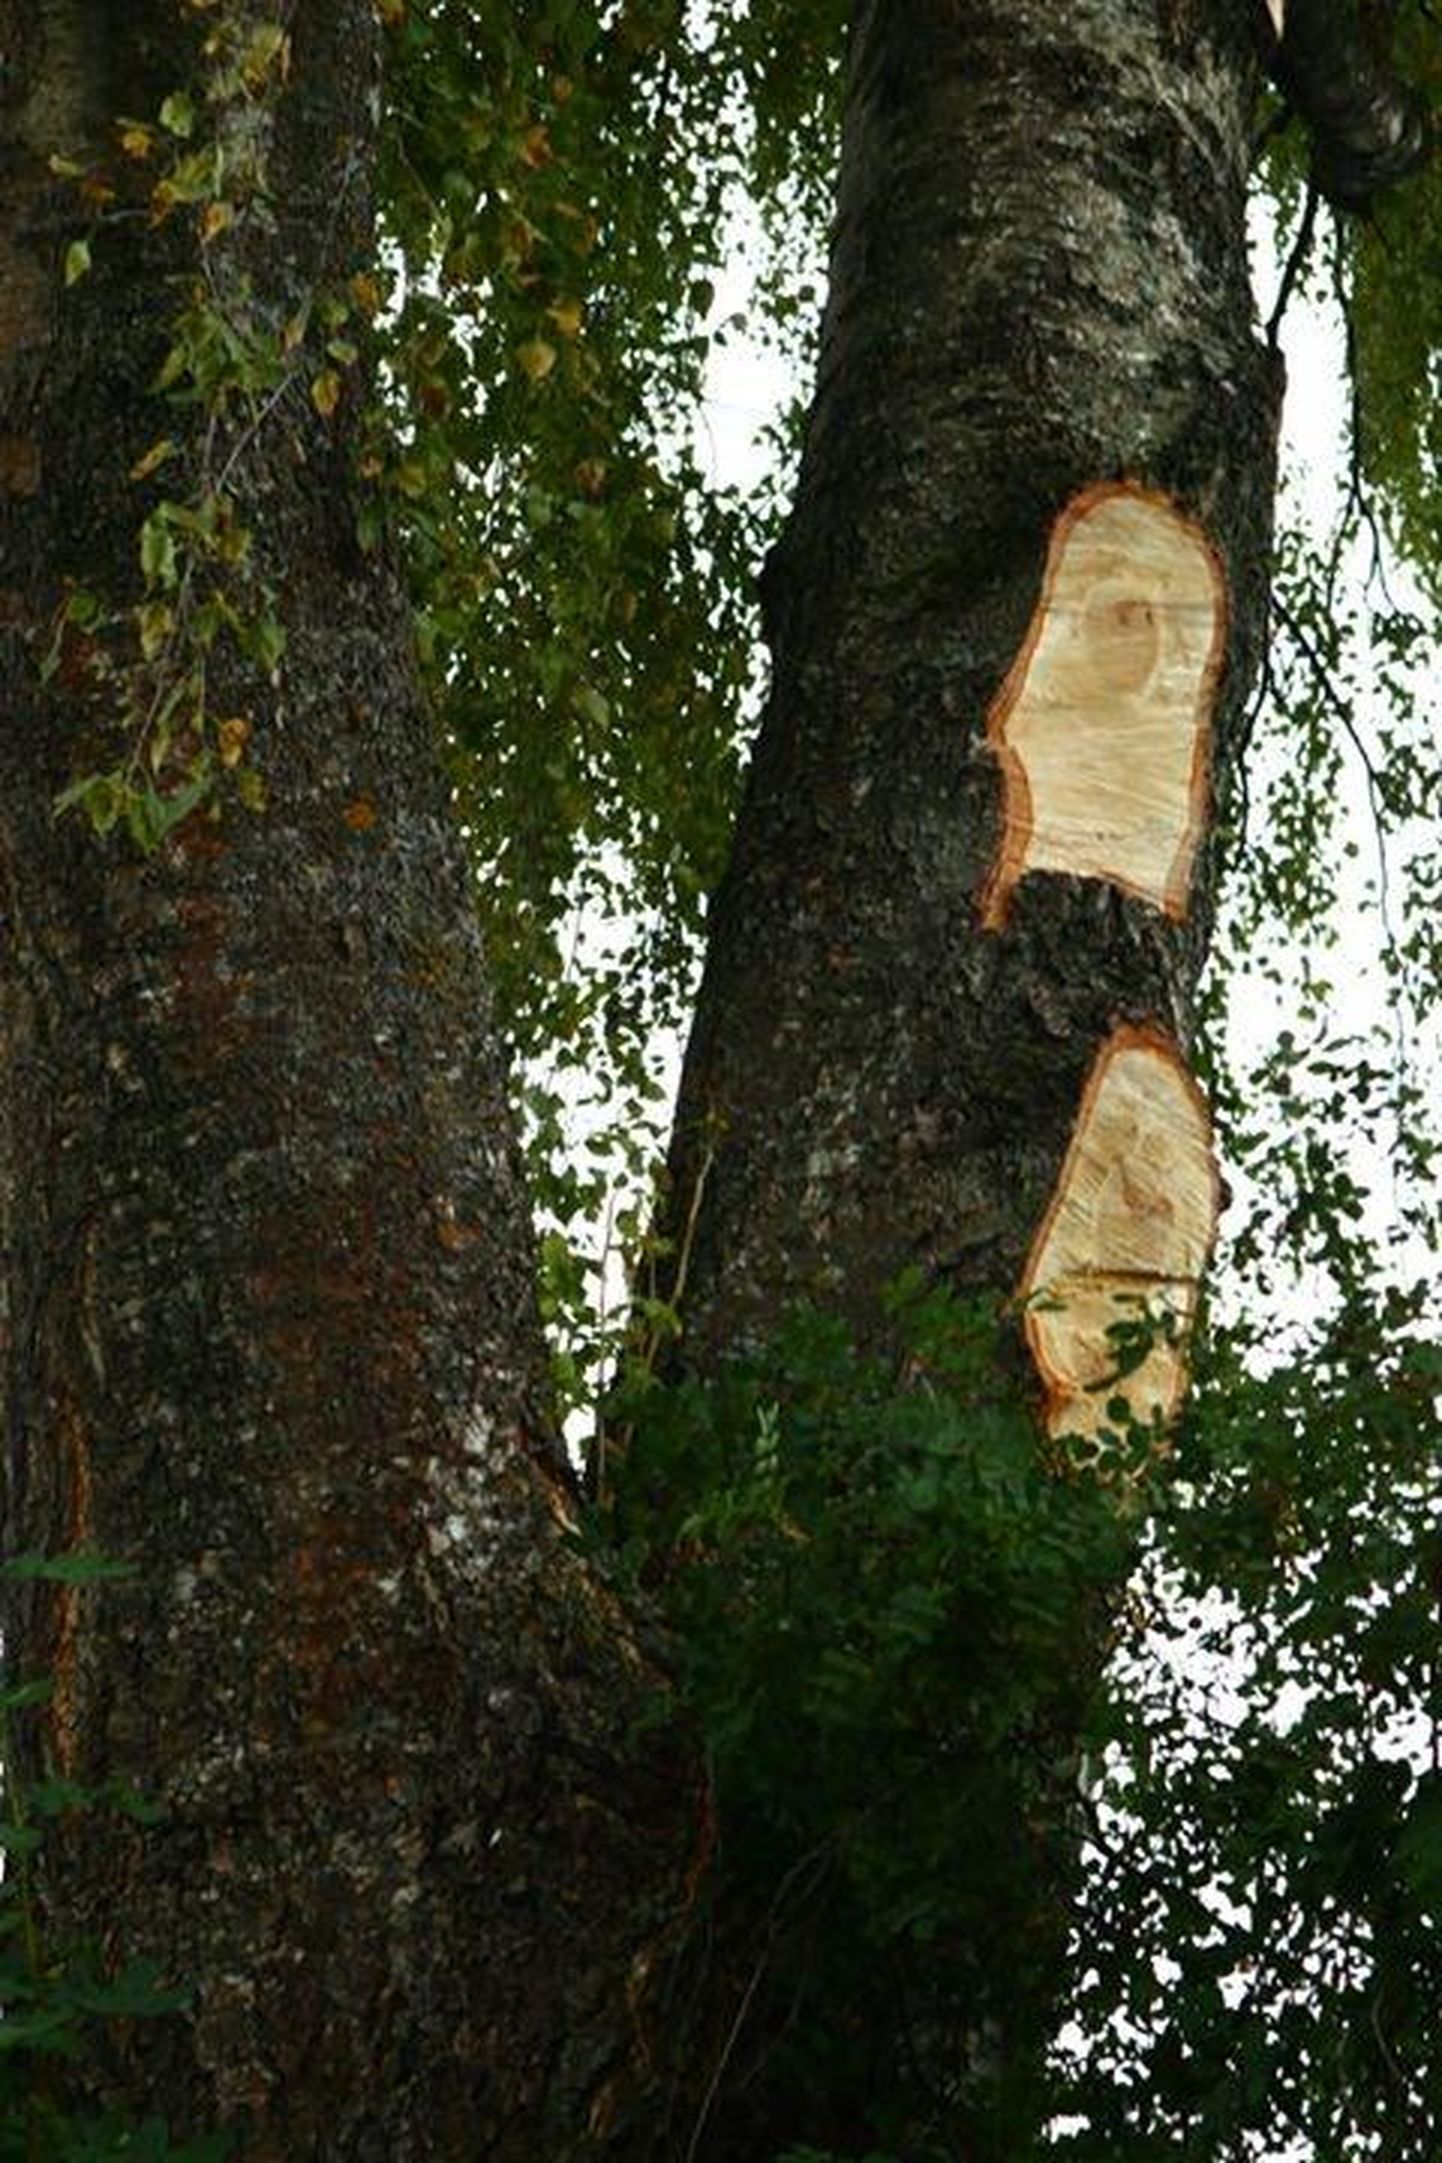 Järjekordne näide ühest Eesti linnast, kus end arboristiks nimetanud soss-sepp on puu ära rikkunud. Selline puu võib murdudes põhjus­tada suurt kahju.